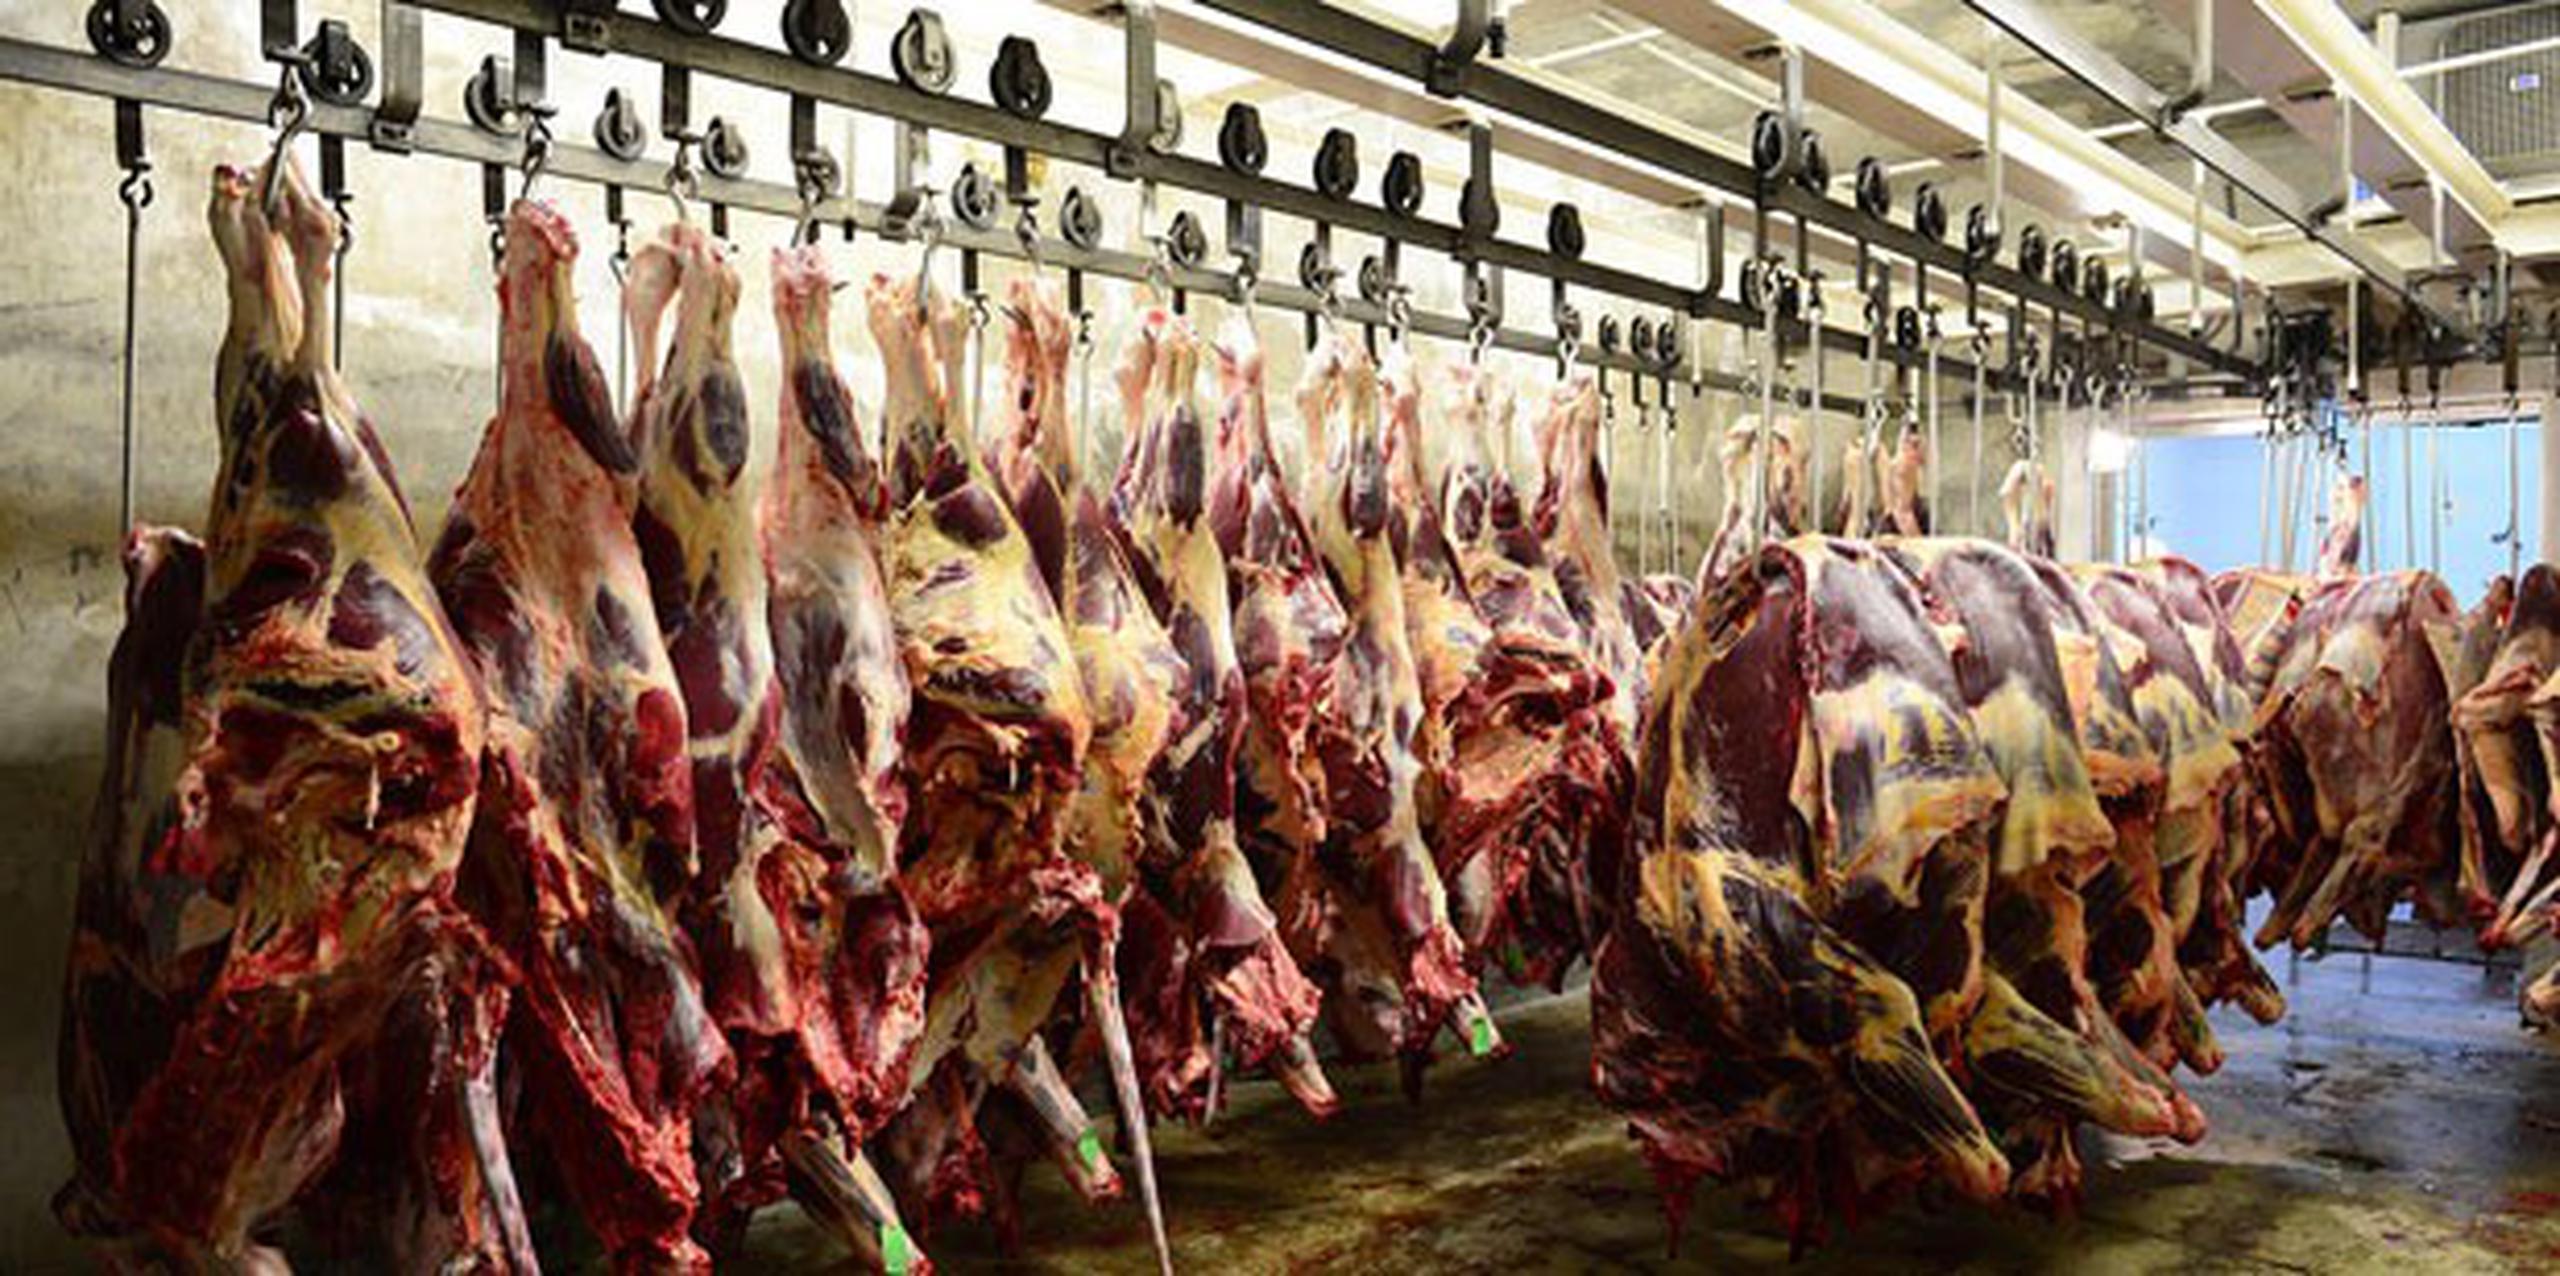 La producción local es tan baja que se tiene que importar el 90 % de la carne de vaca que se consume y casi la misma cifra de cerdo. (Archivo)